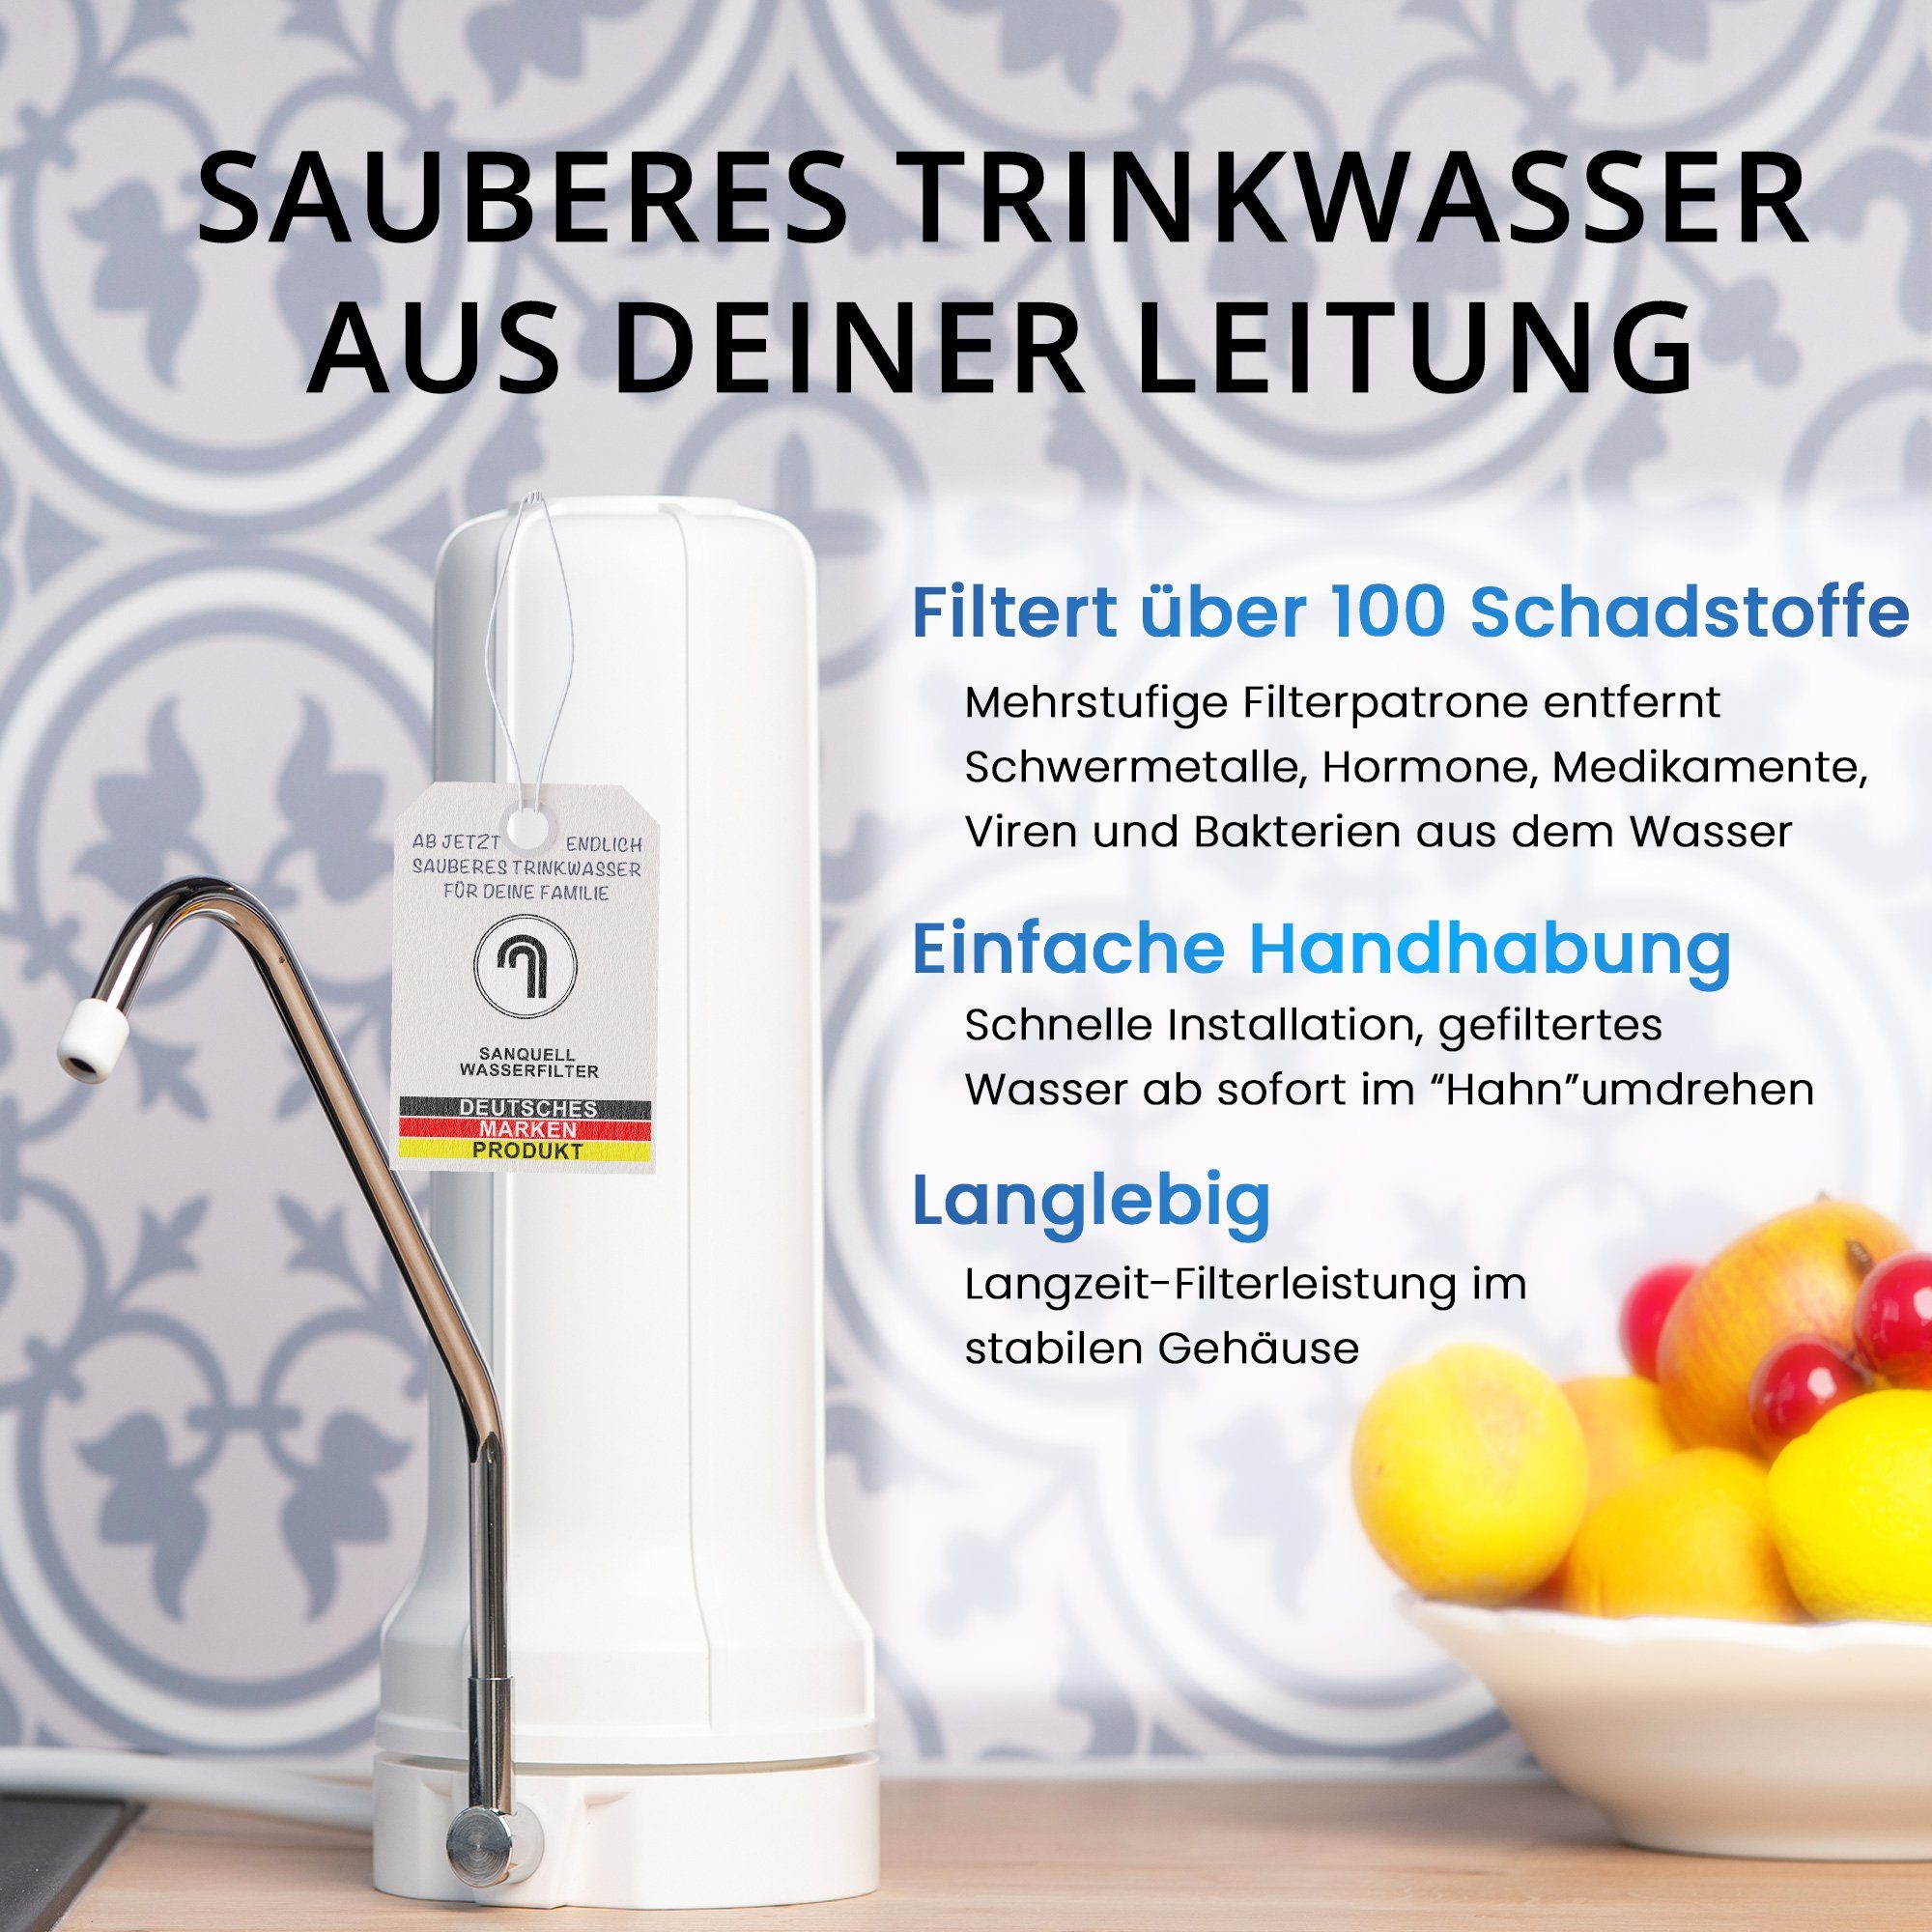 Auftisch Marke mehrstufe Wasserfilter Simply, Filterung, deutsche sanquell